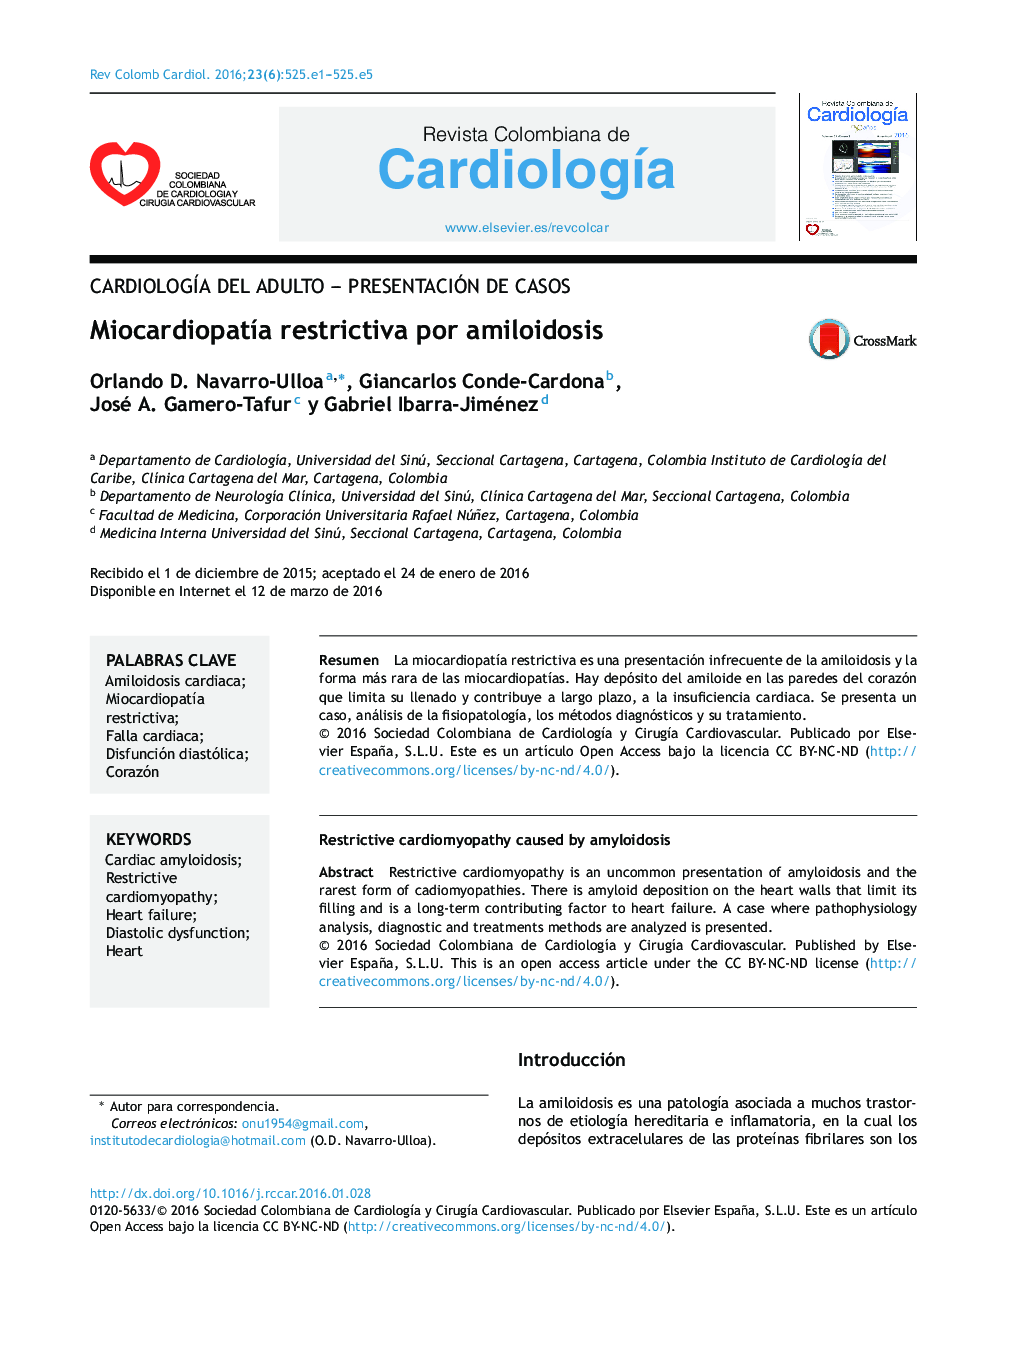 CardiologÃ­a del adulto - Presentación de casosMiocardiopatÃ­a restrictiva por amiloidosisRestrictive cardiomyopathy caused by amyloidosis